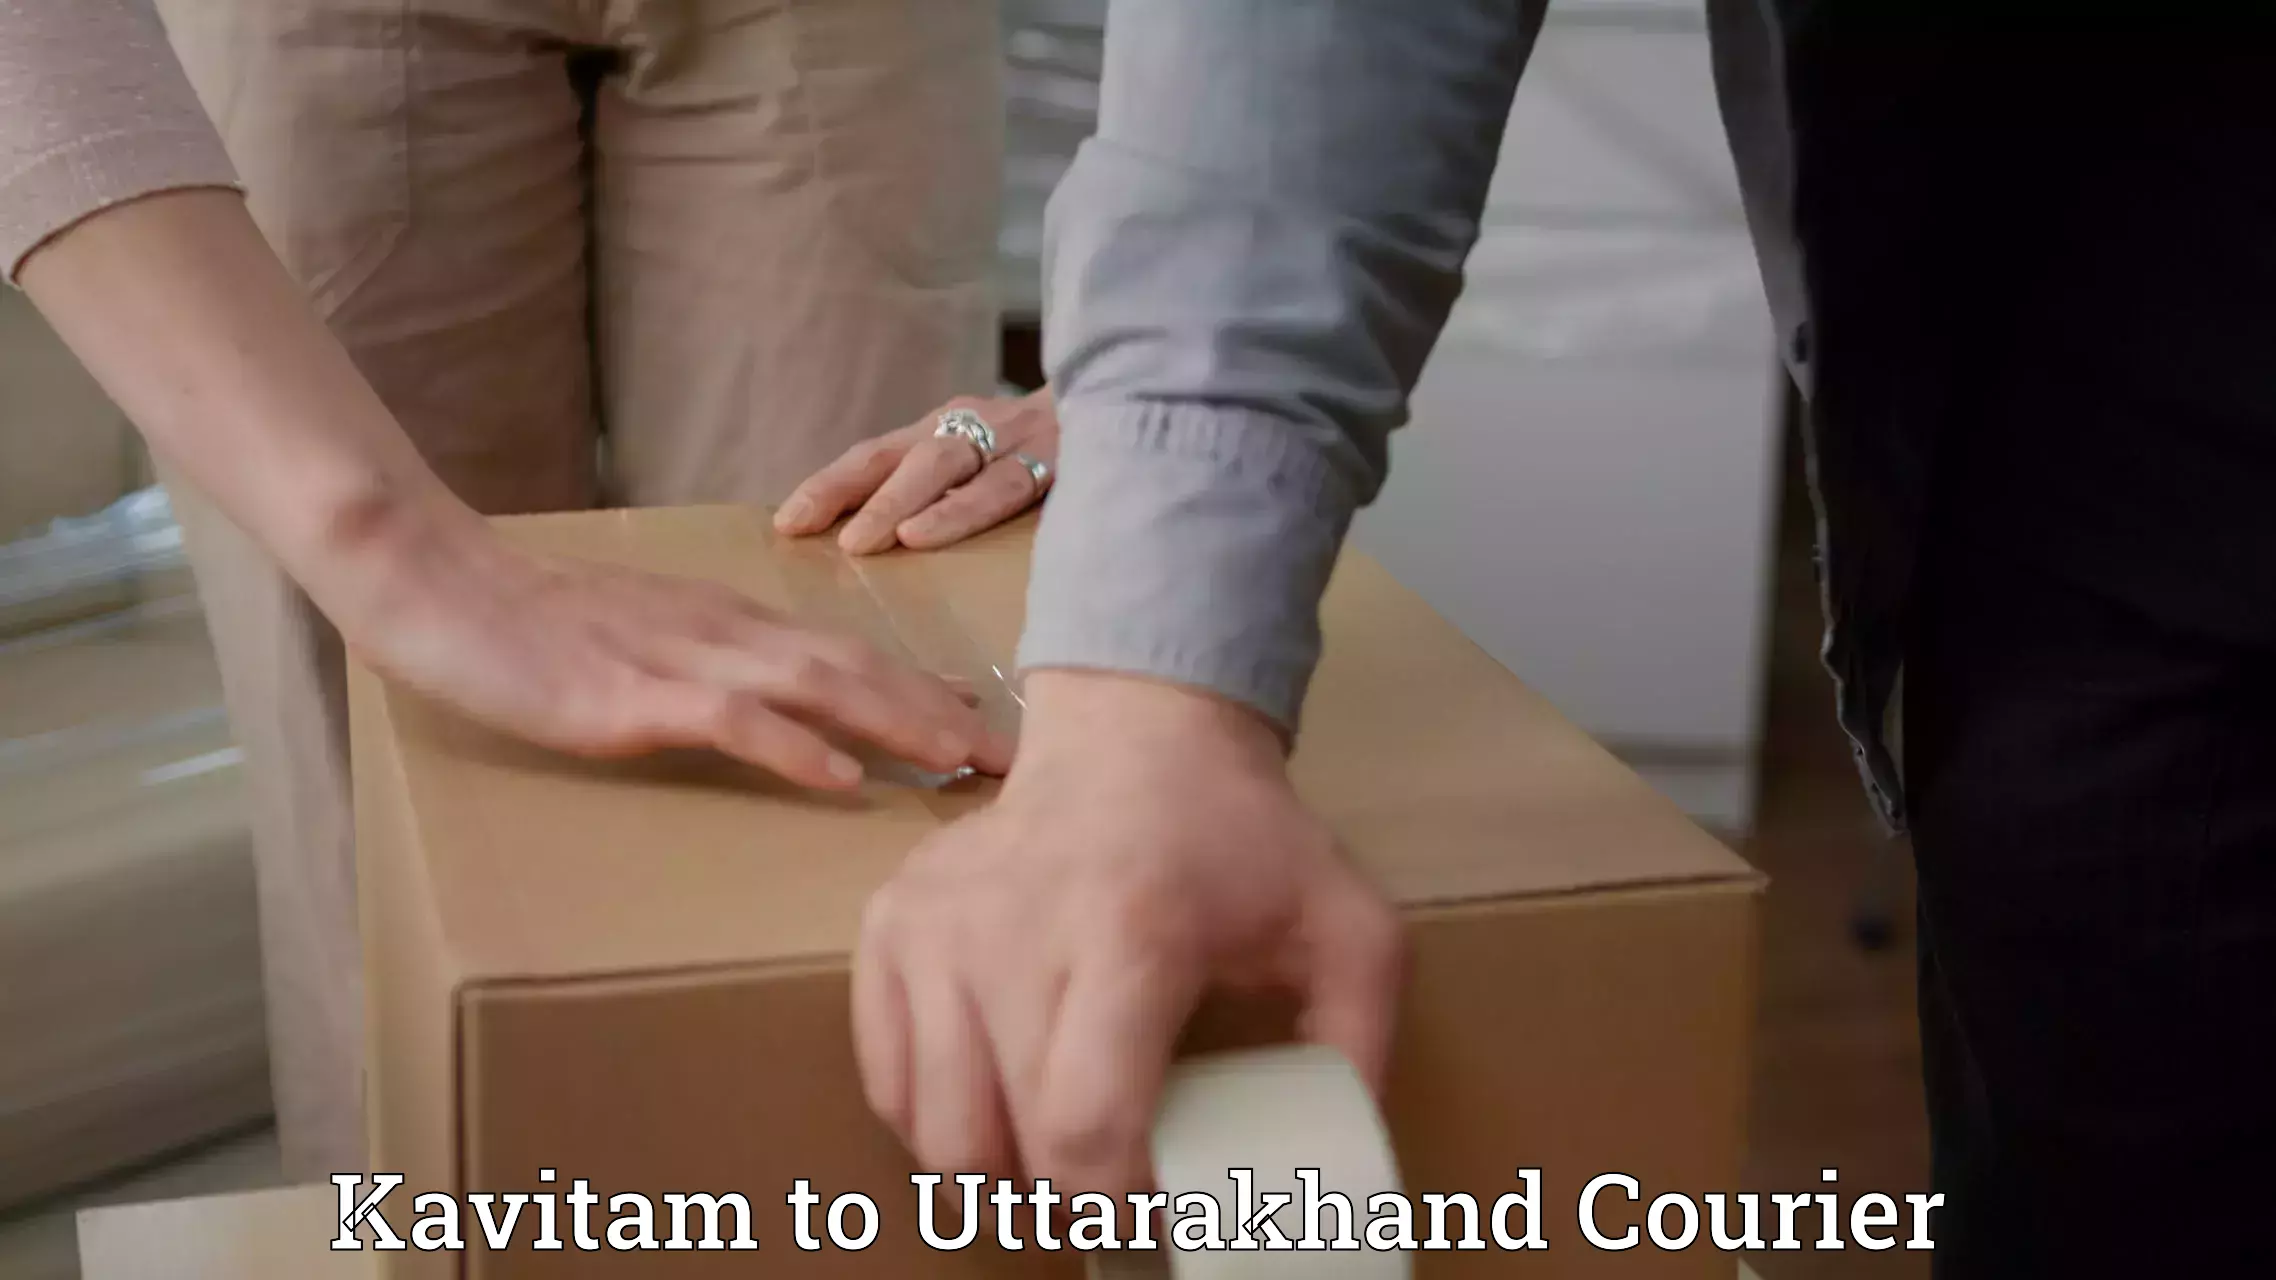 Courier service comparison Kavitam to Paithani